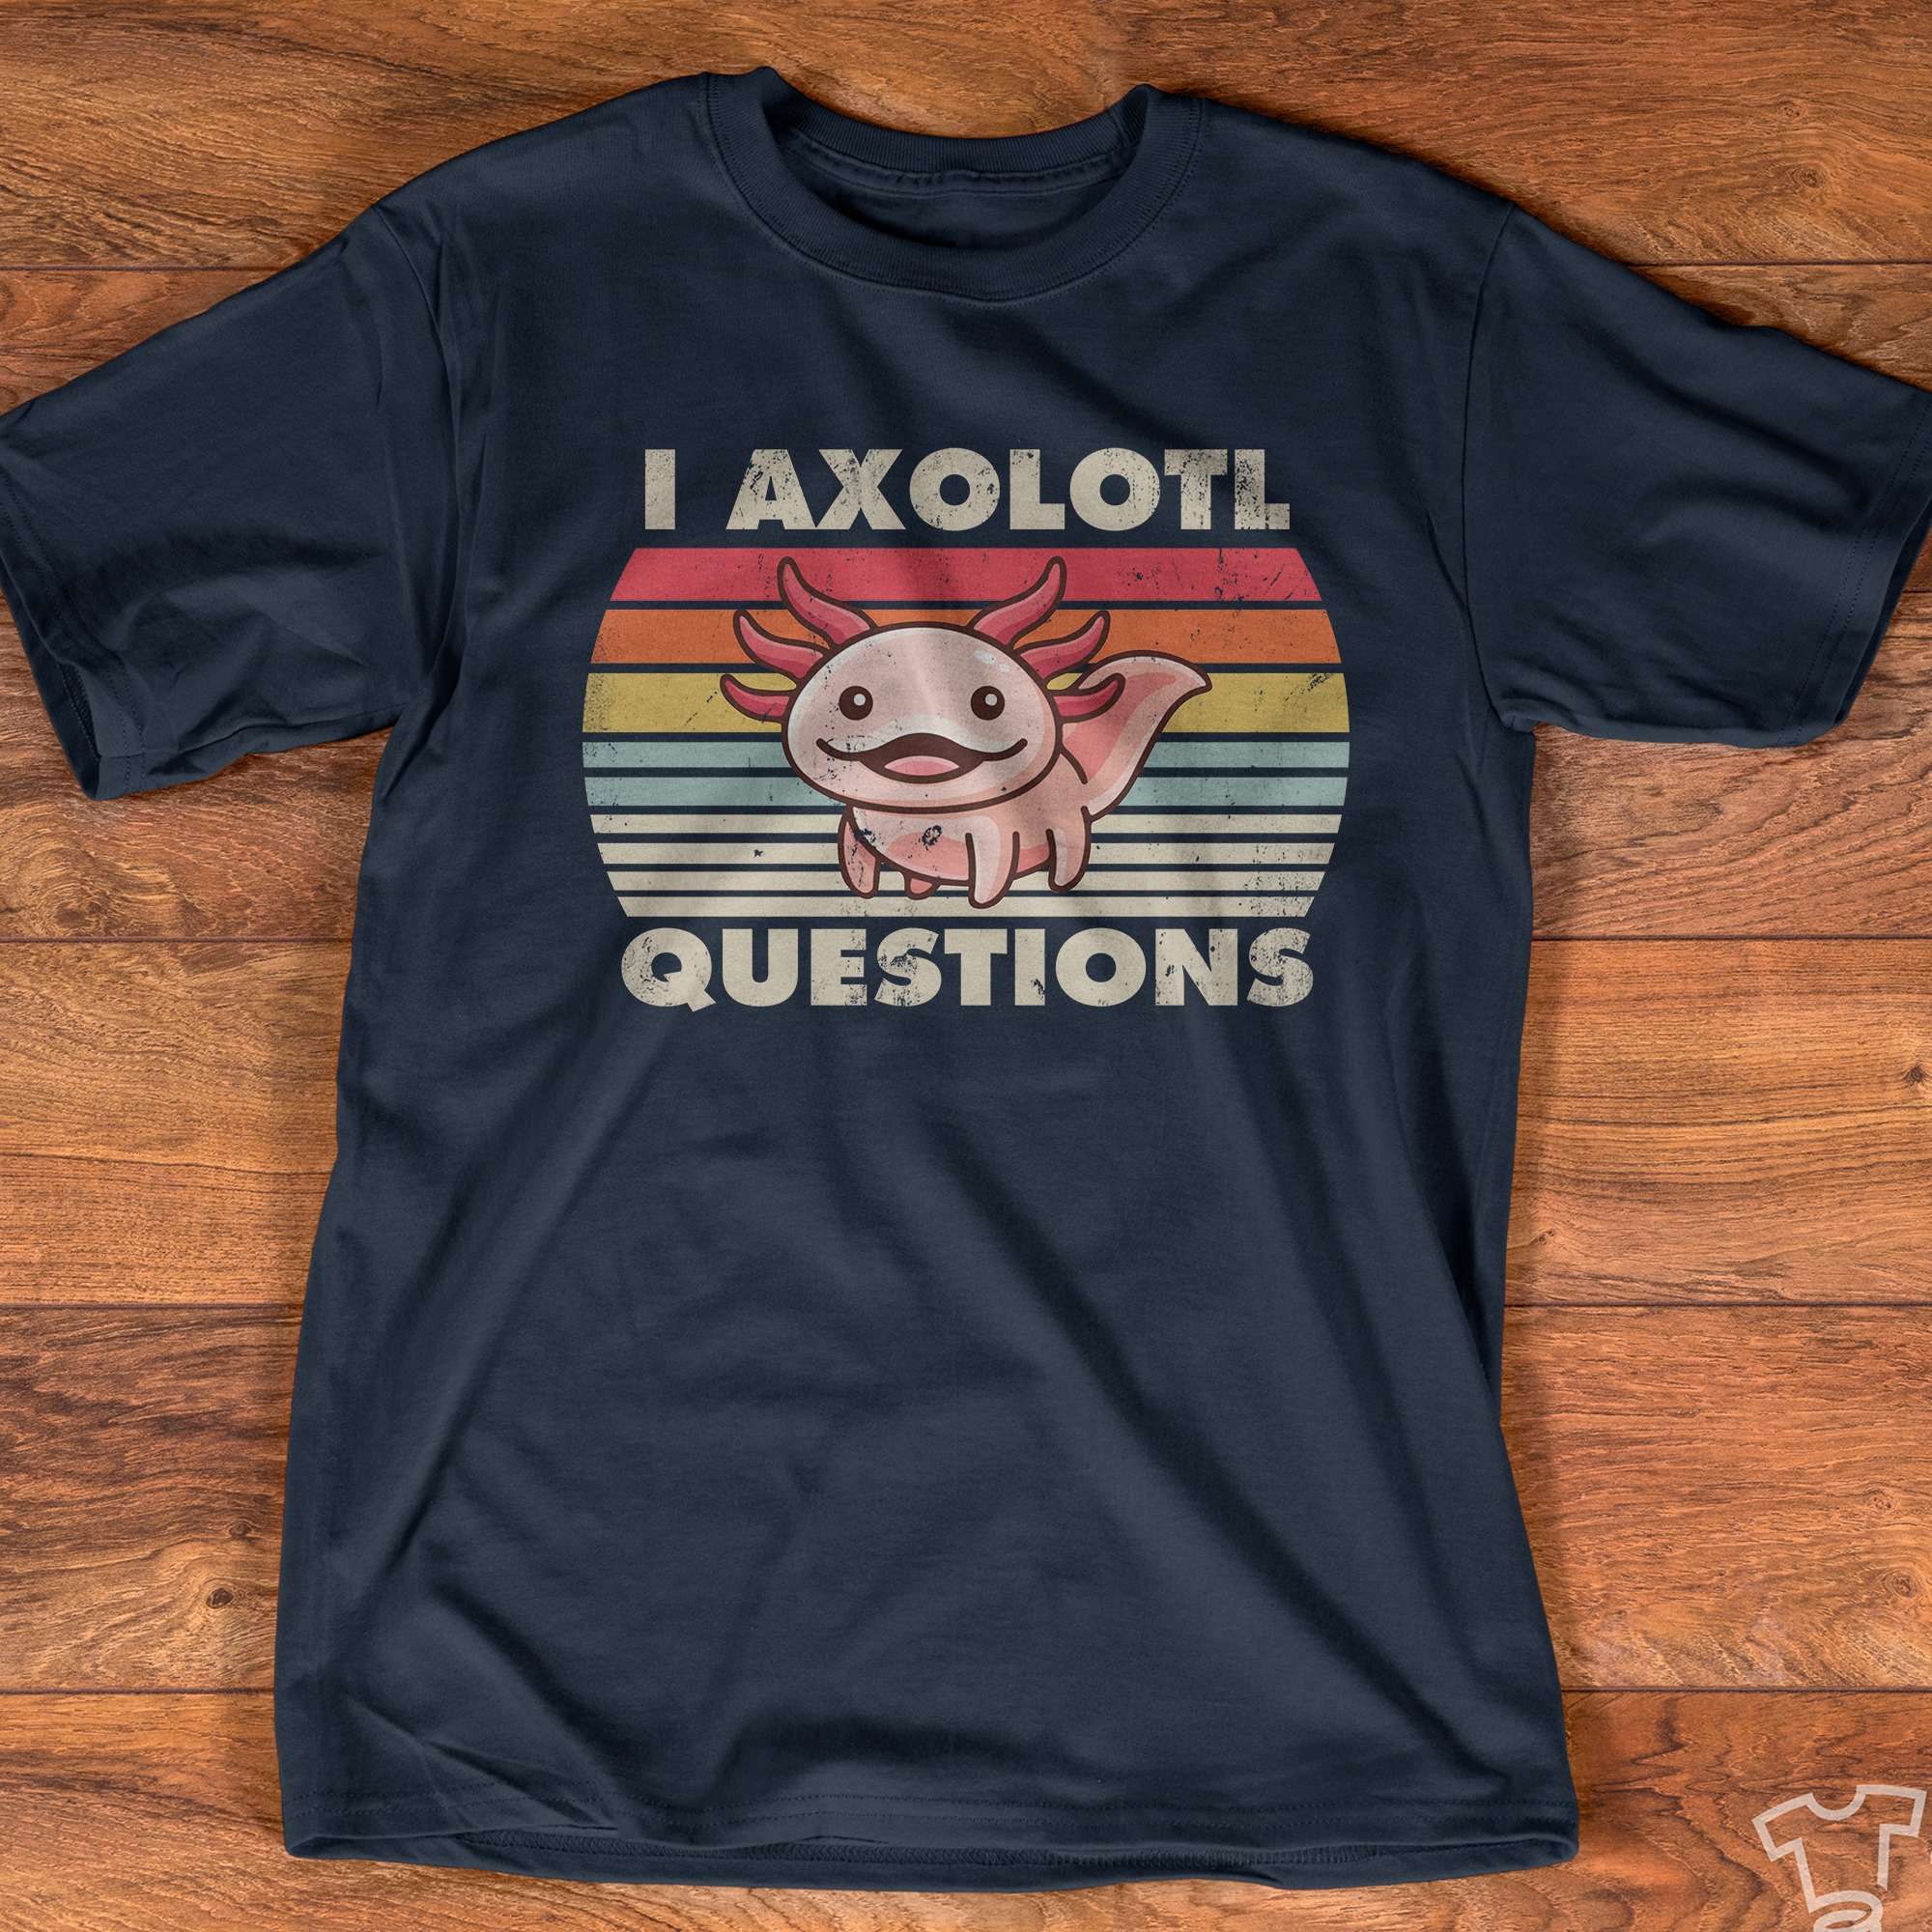 I axolotl questions - Mexico axolotl, axolotl gorgeous animal